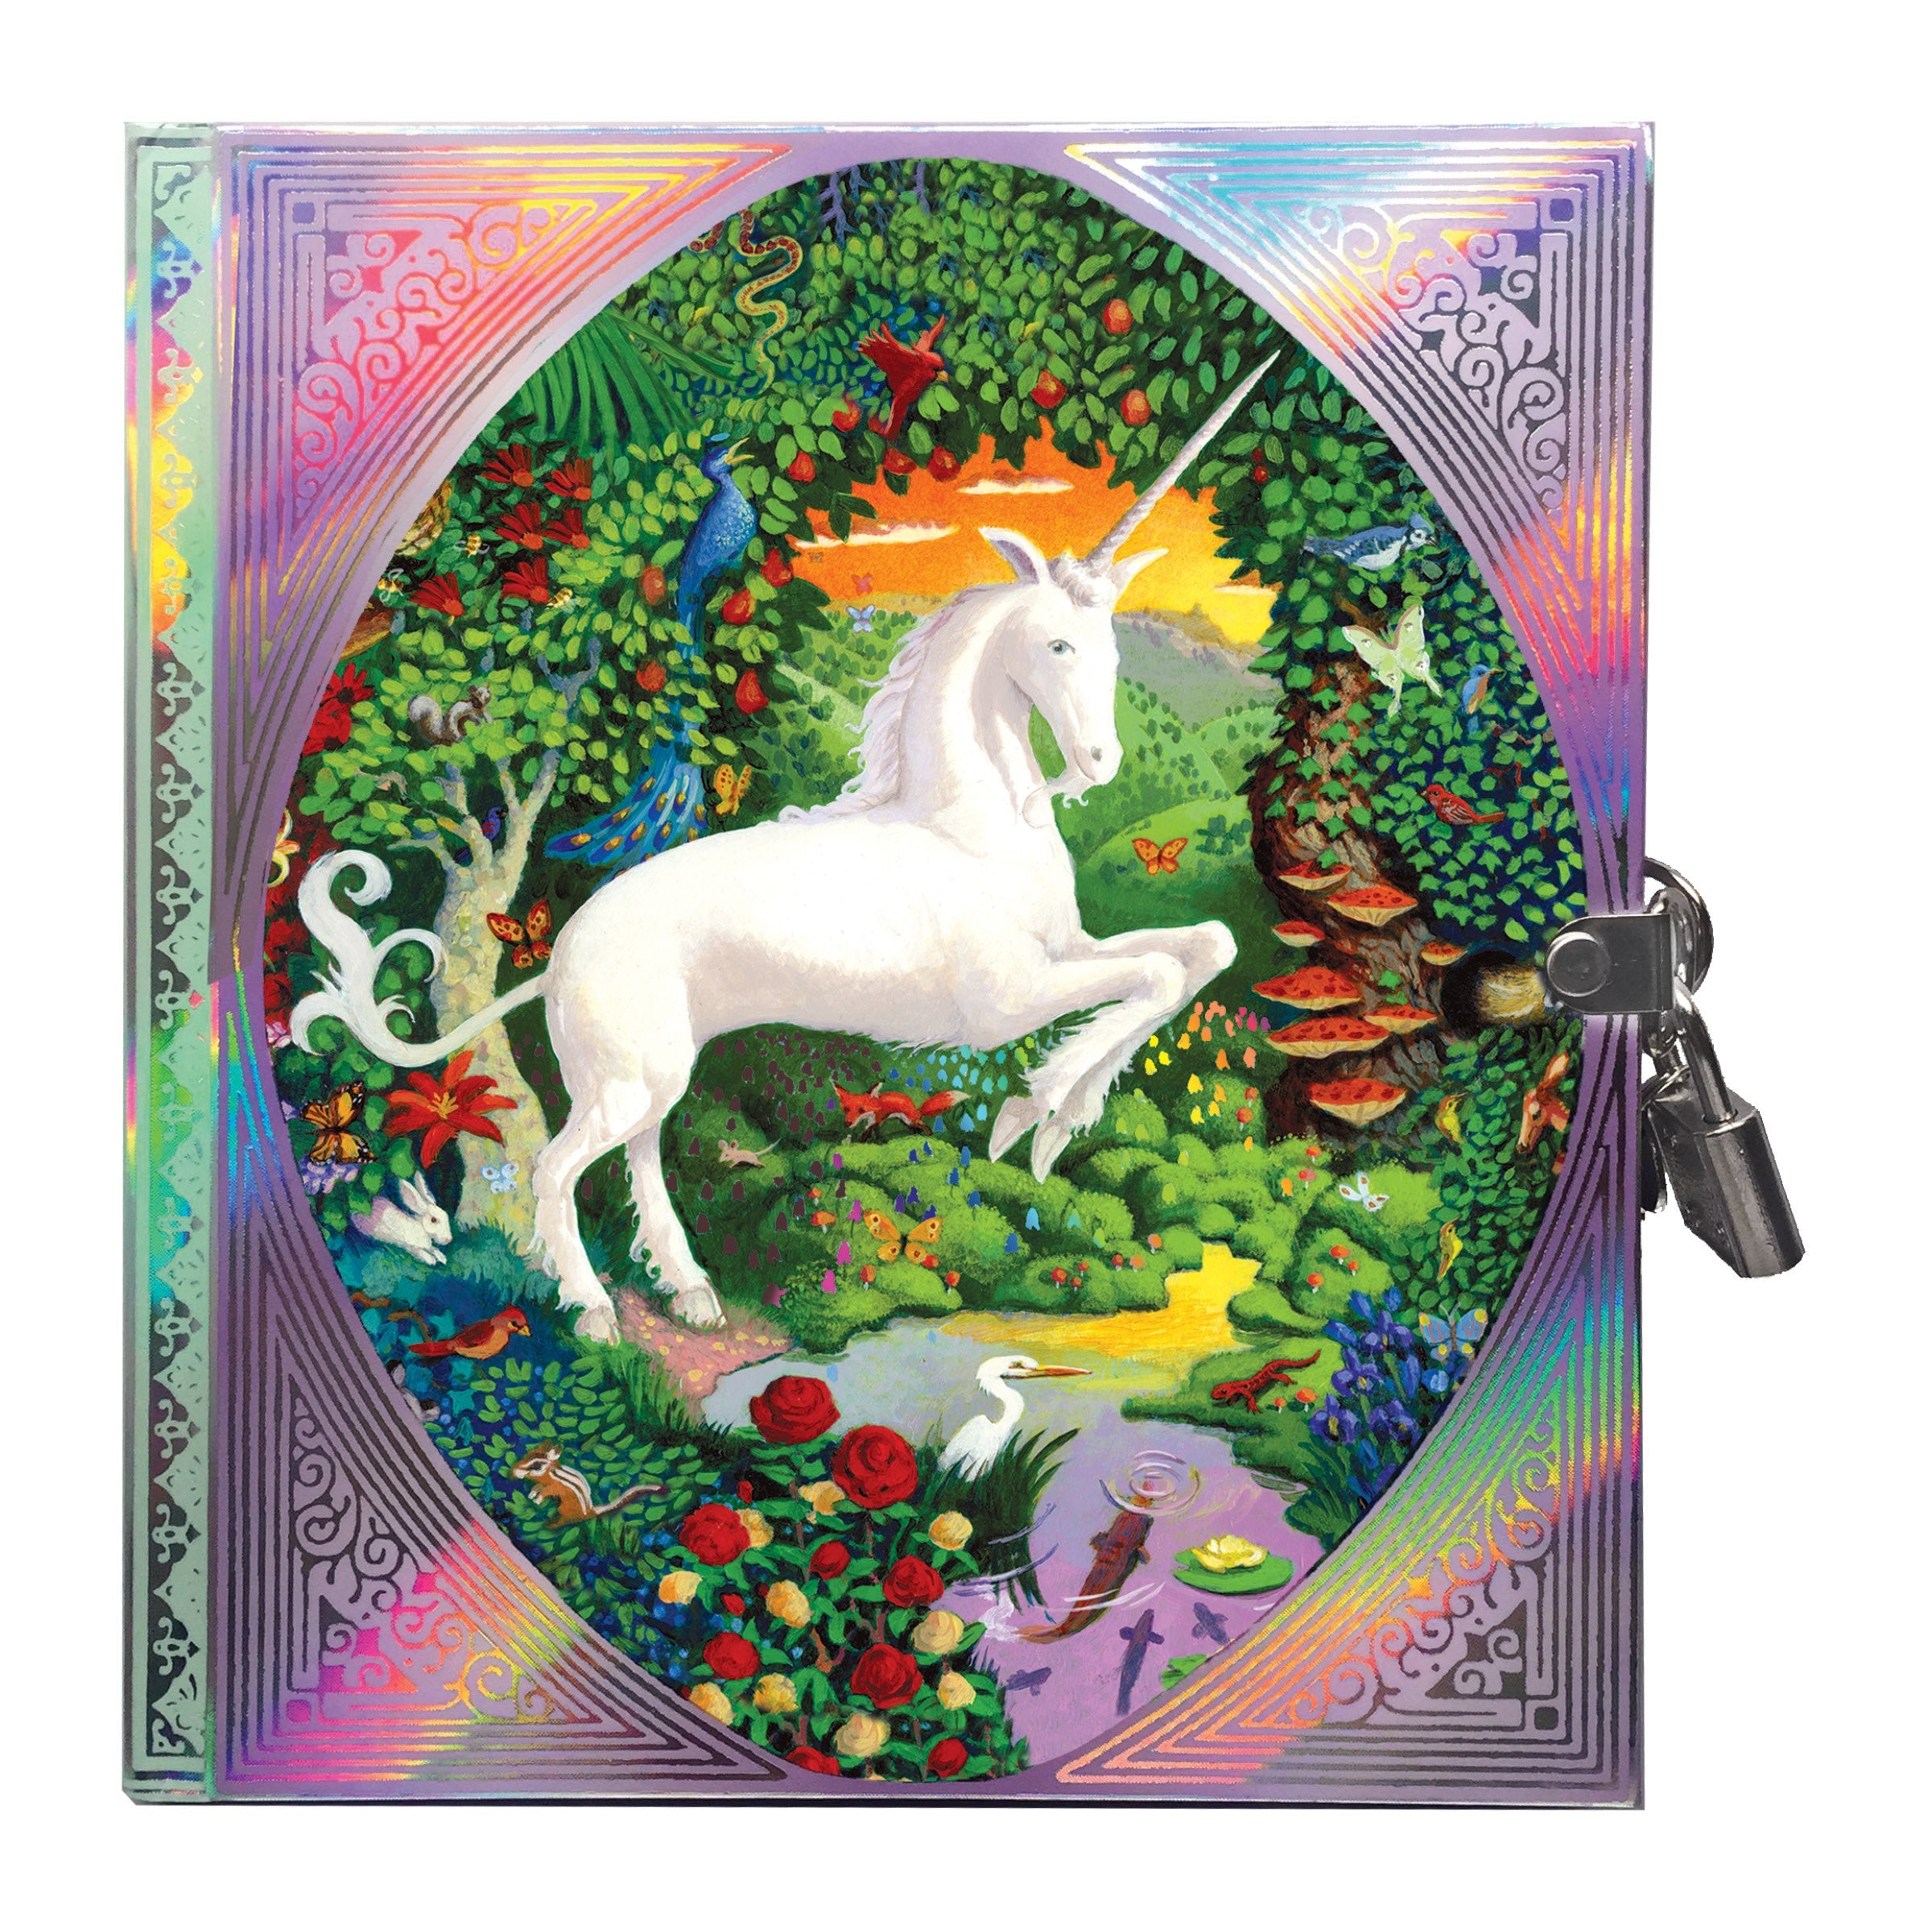 Eeboo Locking Diary - Unicorn    